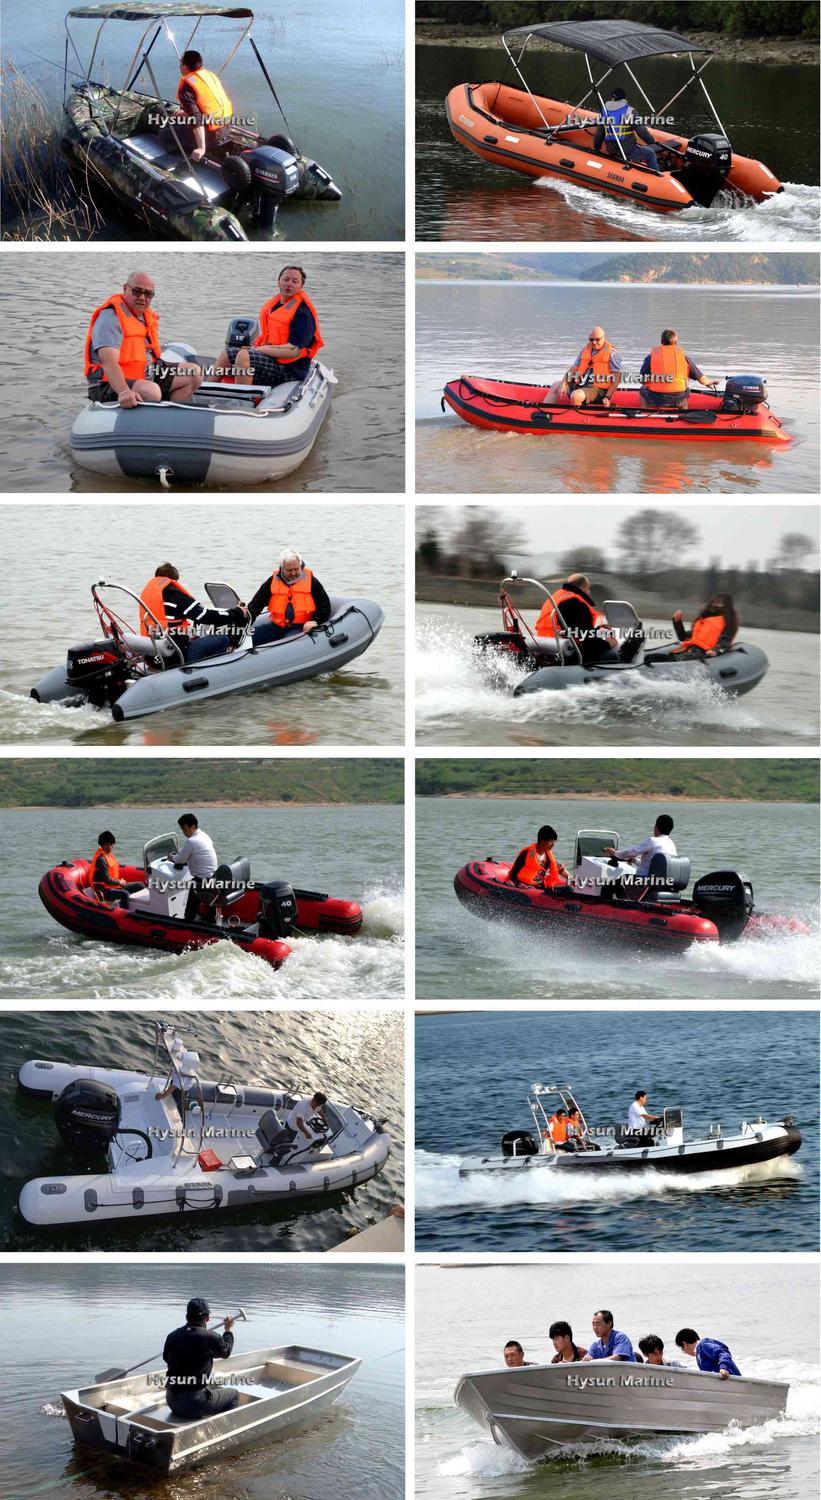 Hysun Marine Inflatable Boats Customers' Feedback